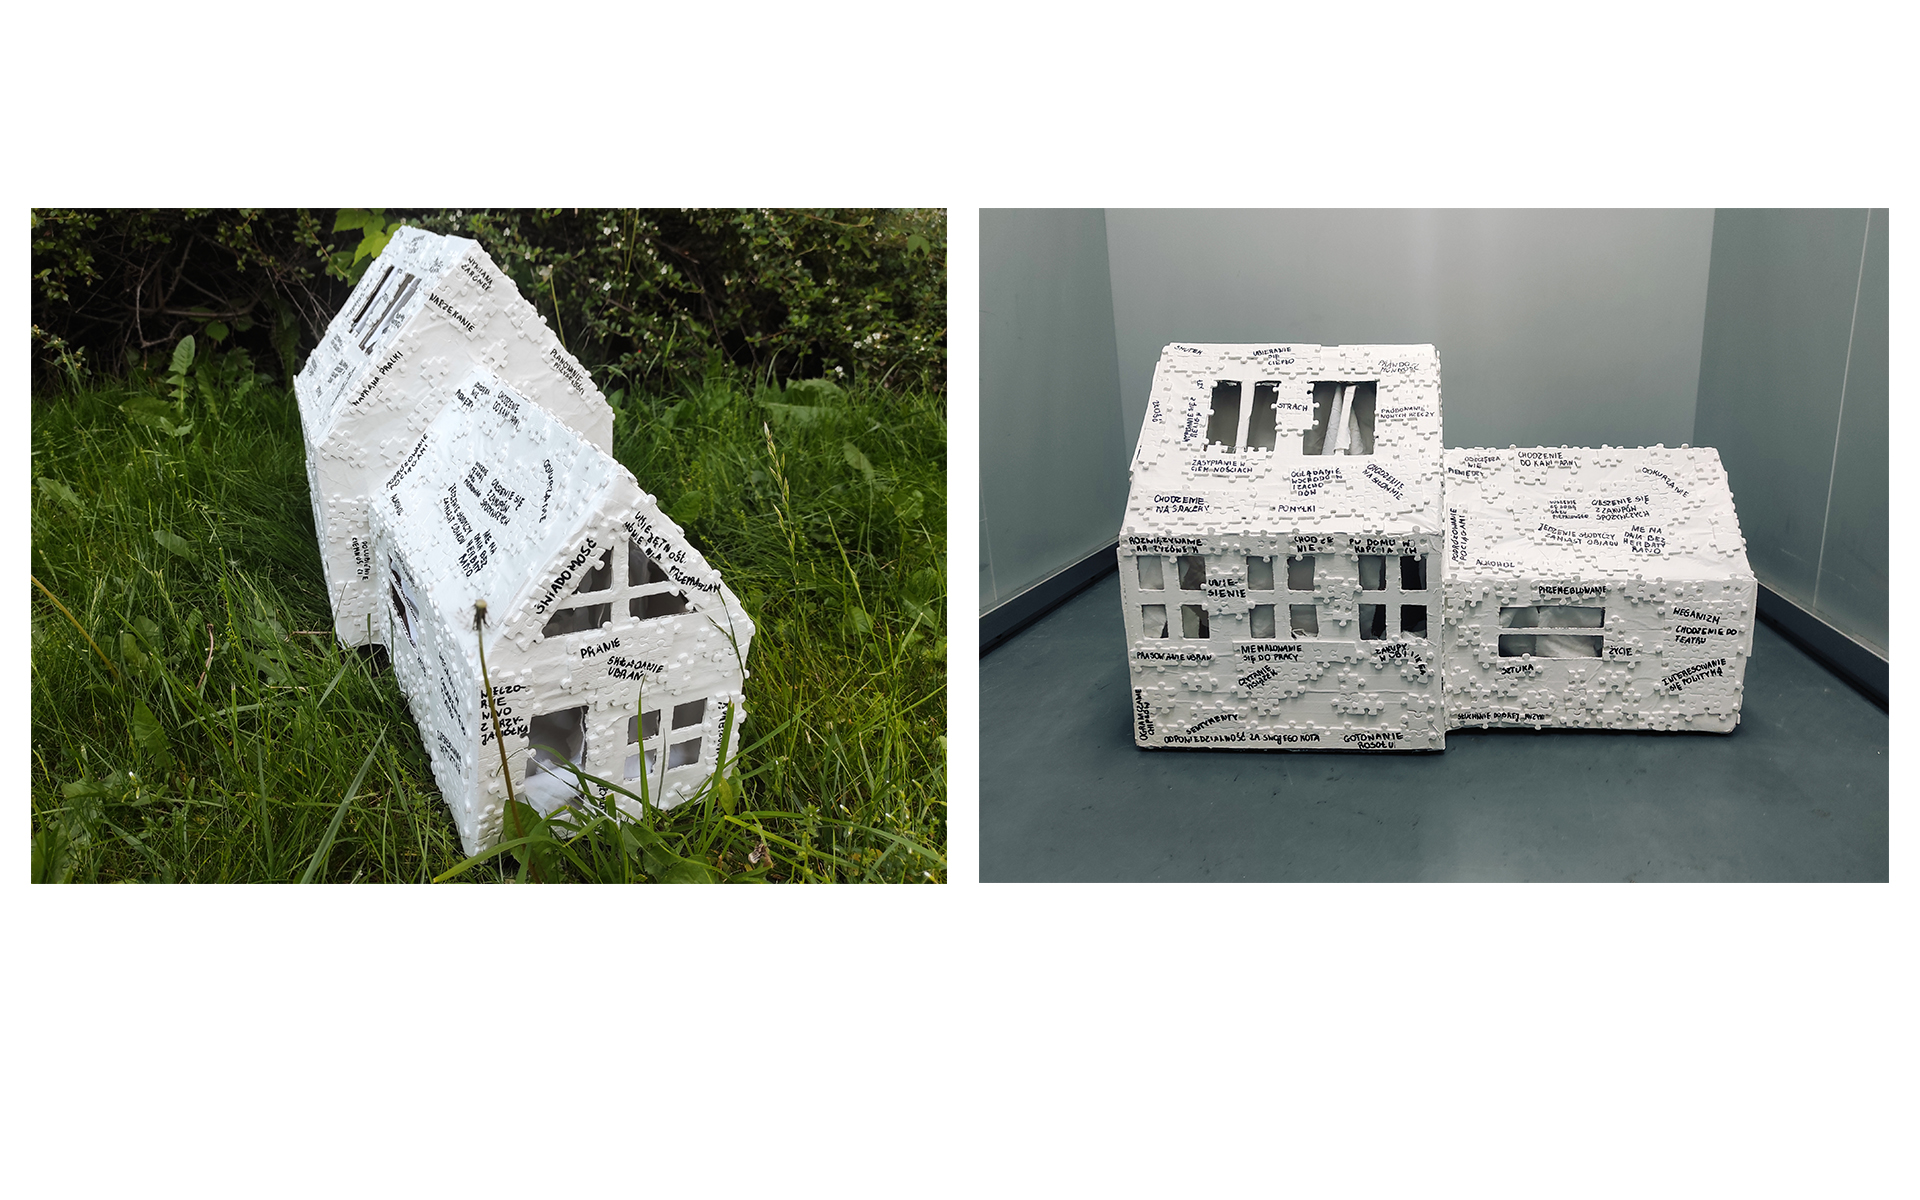 Dokumentacja instalacji w formie białego domu z puzzlami oraz czarnymi odręcznymi napisami. 